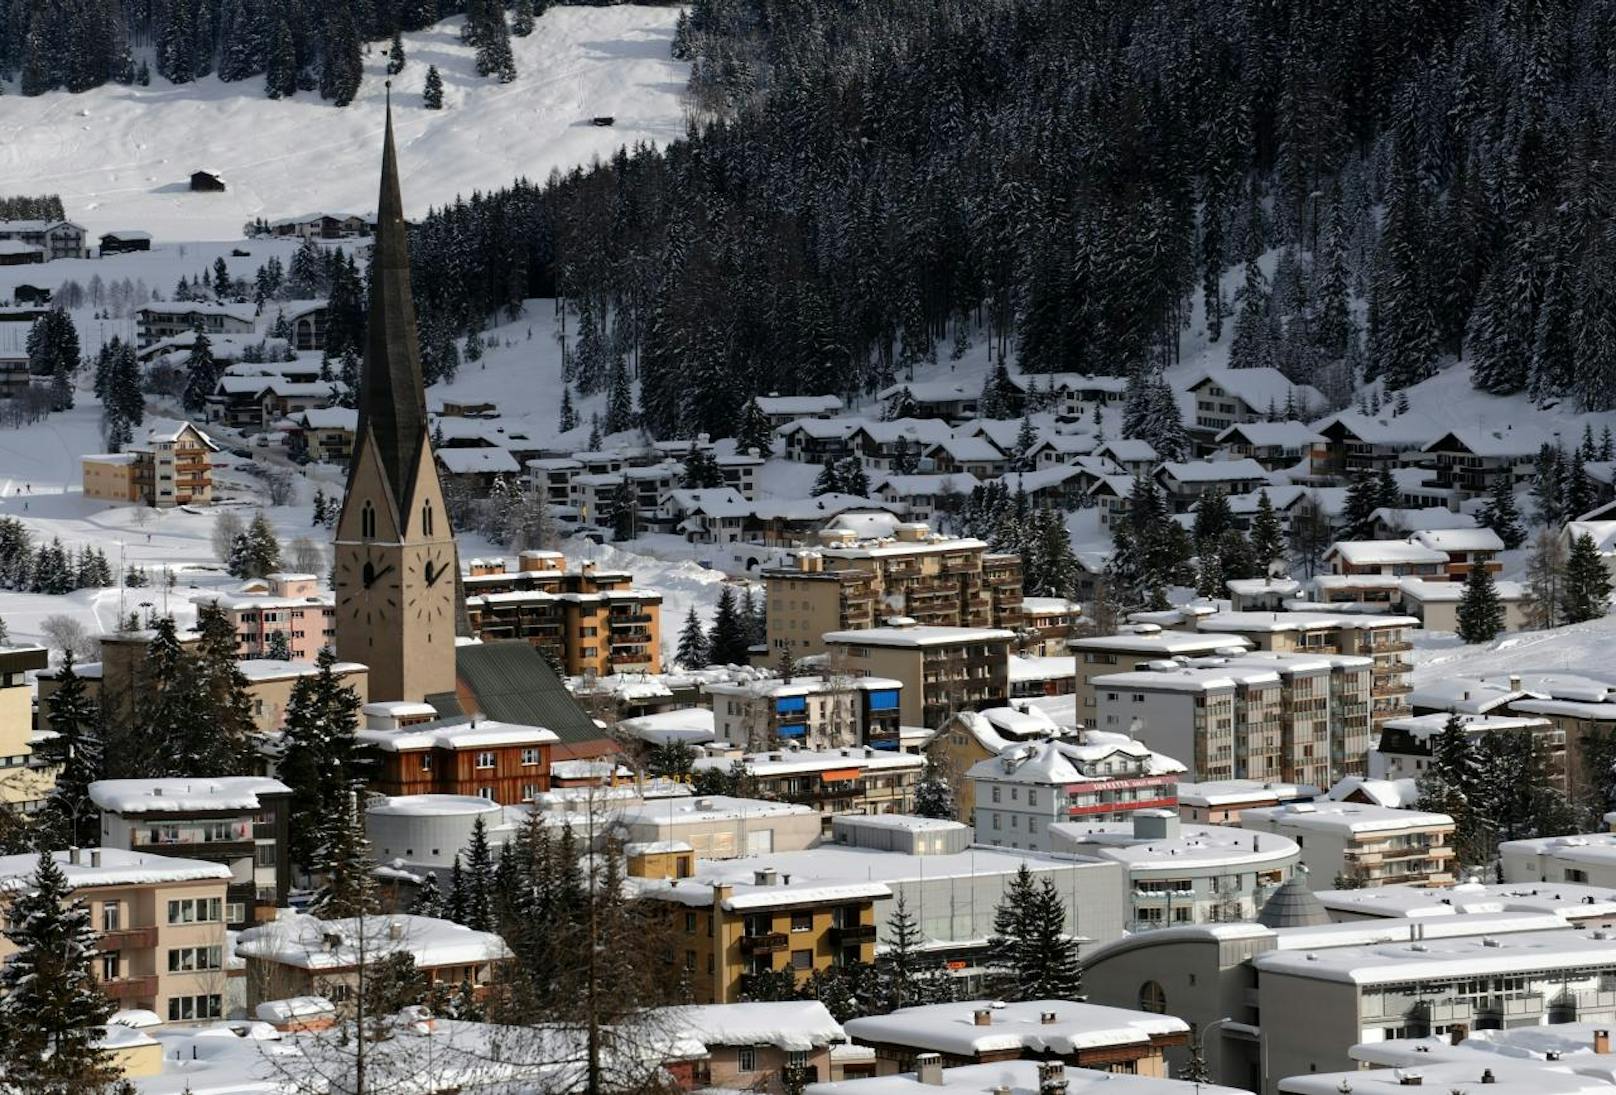 Im Schweizer Skiressort Davos lag der Wert bei rund 2.700 Partikeln pro Liter.
/Fabrice Coffrini